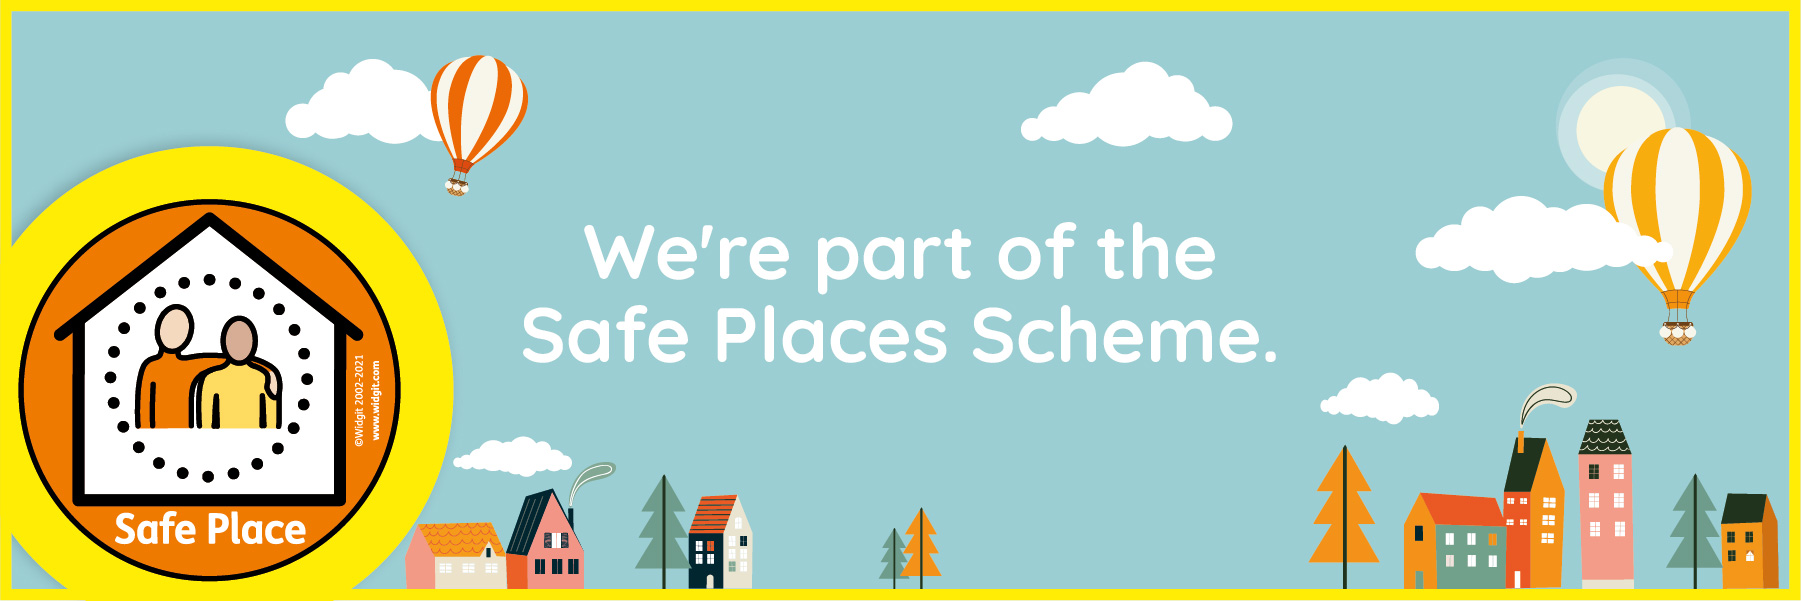 We’re part of the Safe Places Scheme!